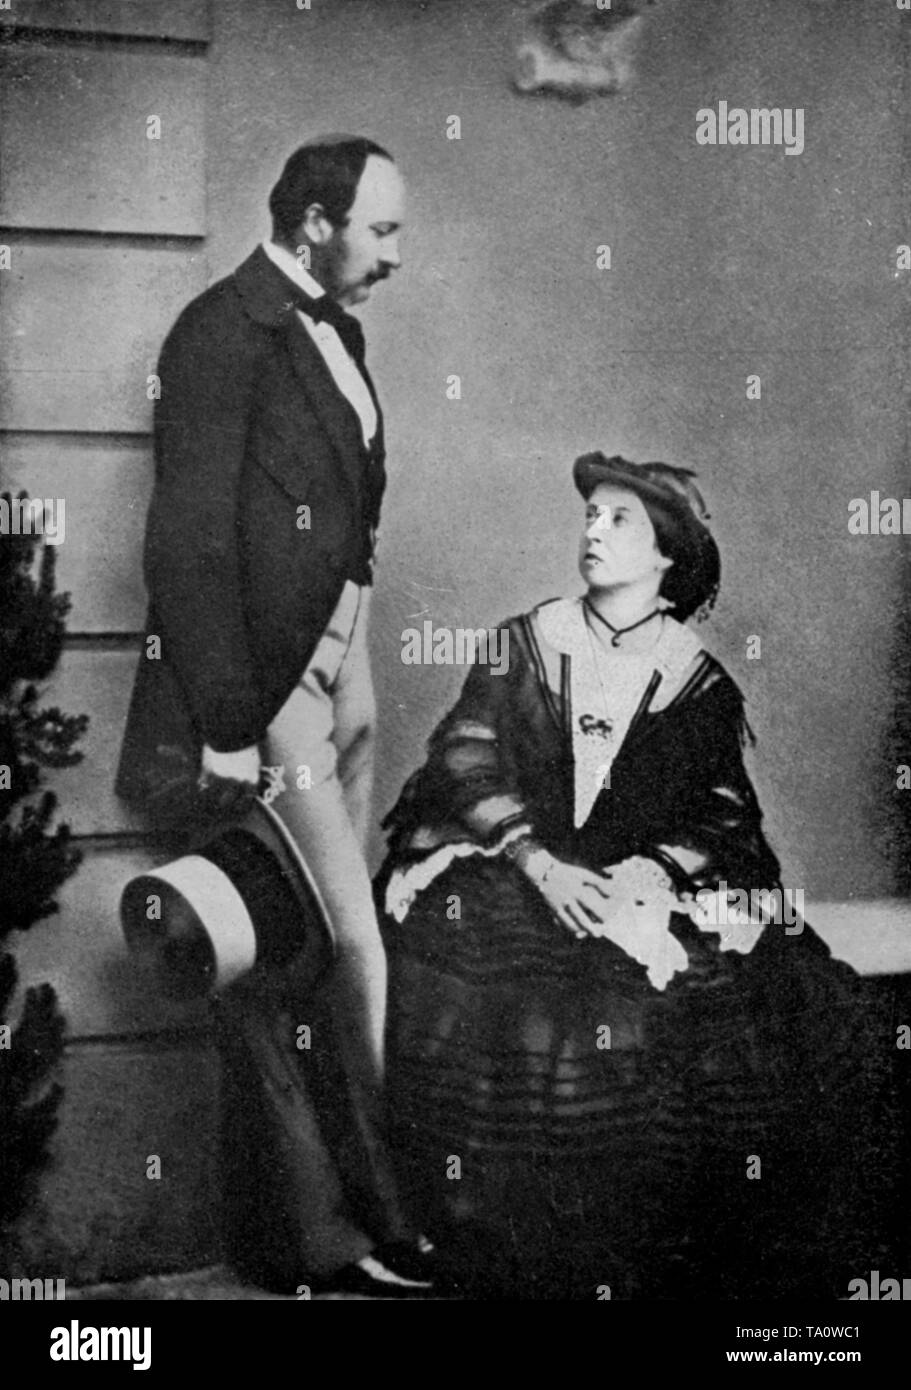 Queen Victoria (1819-1901) et Prince Consort (1819-1861), 1860. Par Lytton Strachey, Chatto & Windus, Londres. La reine Victoria (1819-1901) et le Prince Consort (1819-1861), photographiés ici l'année précédant la mort du Prince Consort de la fièvre typhoïde. La reine Victoria fut la monarque du Royaume-Uni de Grande-Bretagne et d'Irlande du 20 juin 1837 jusqu'à sa mort. Banque D'Images